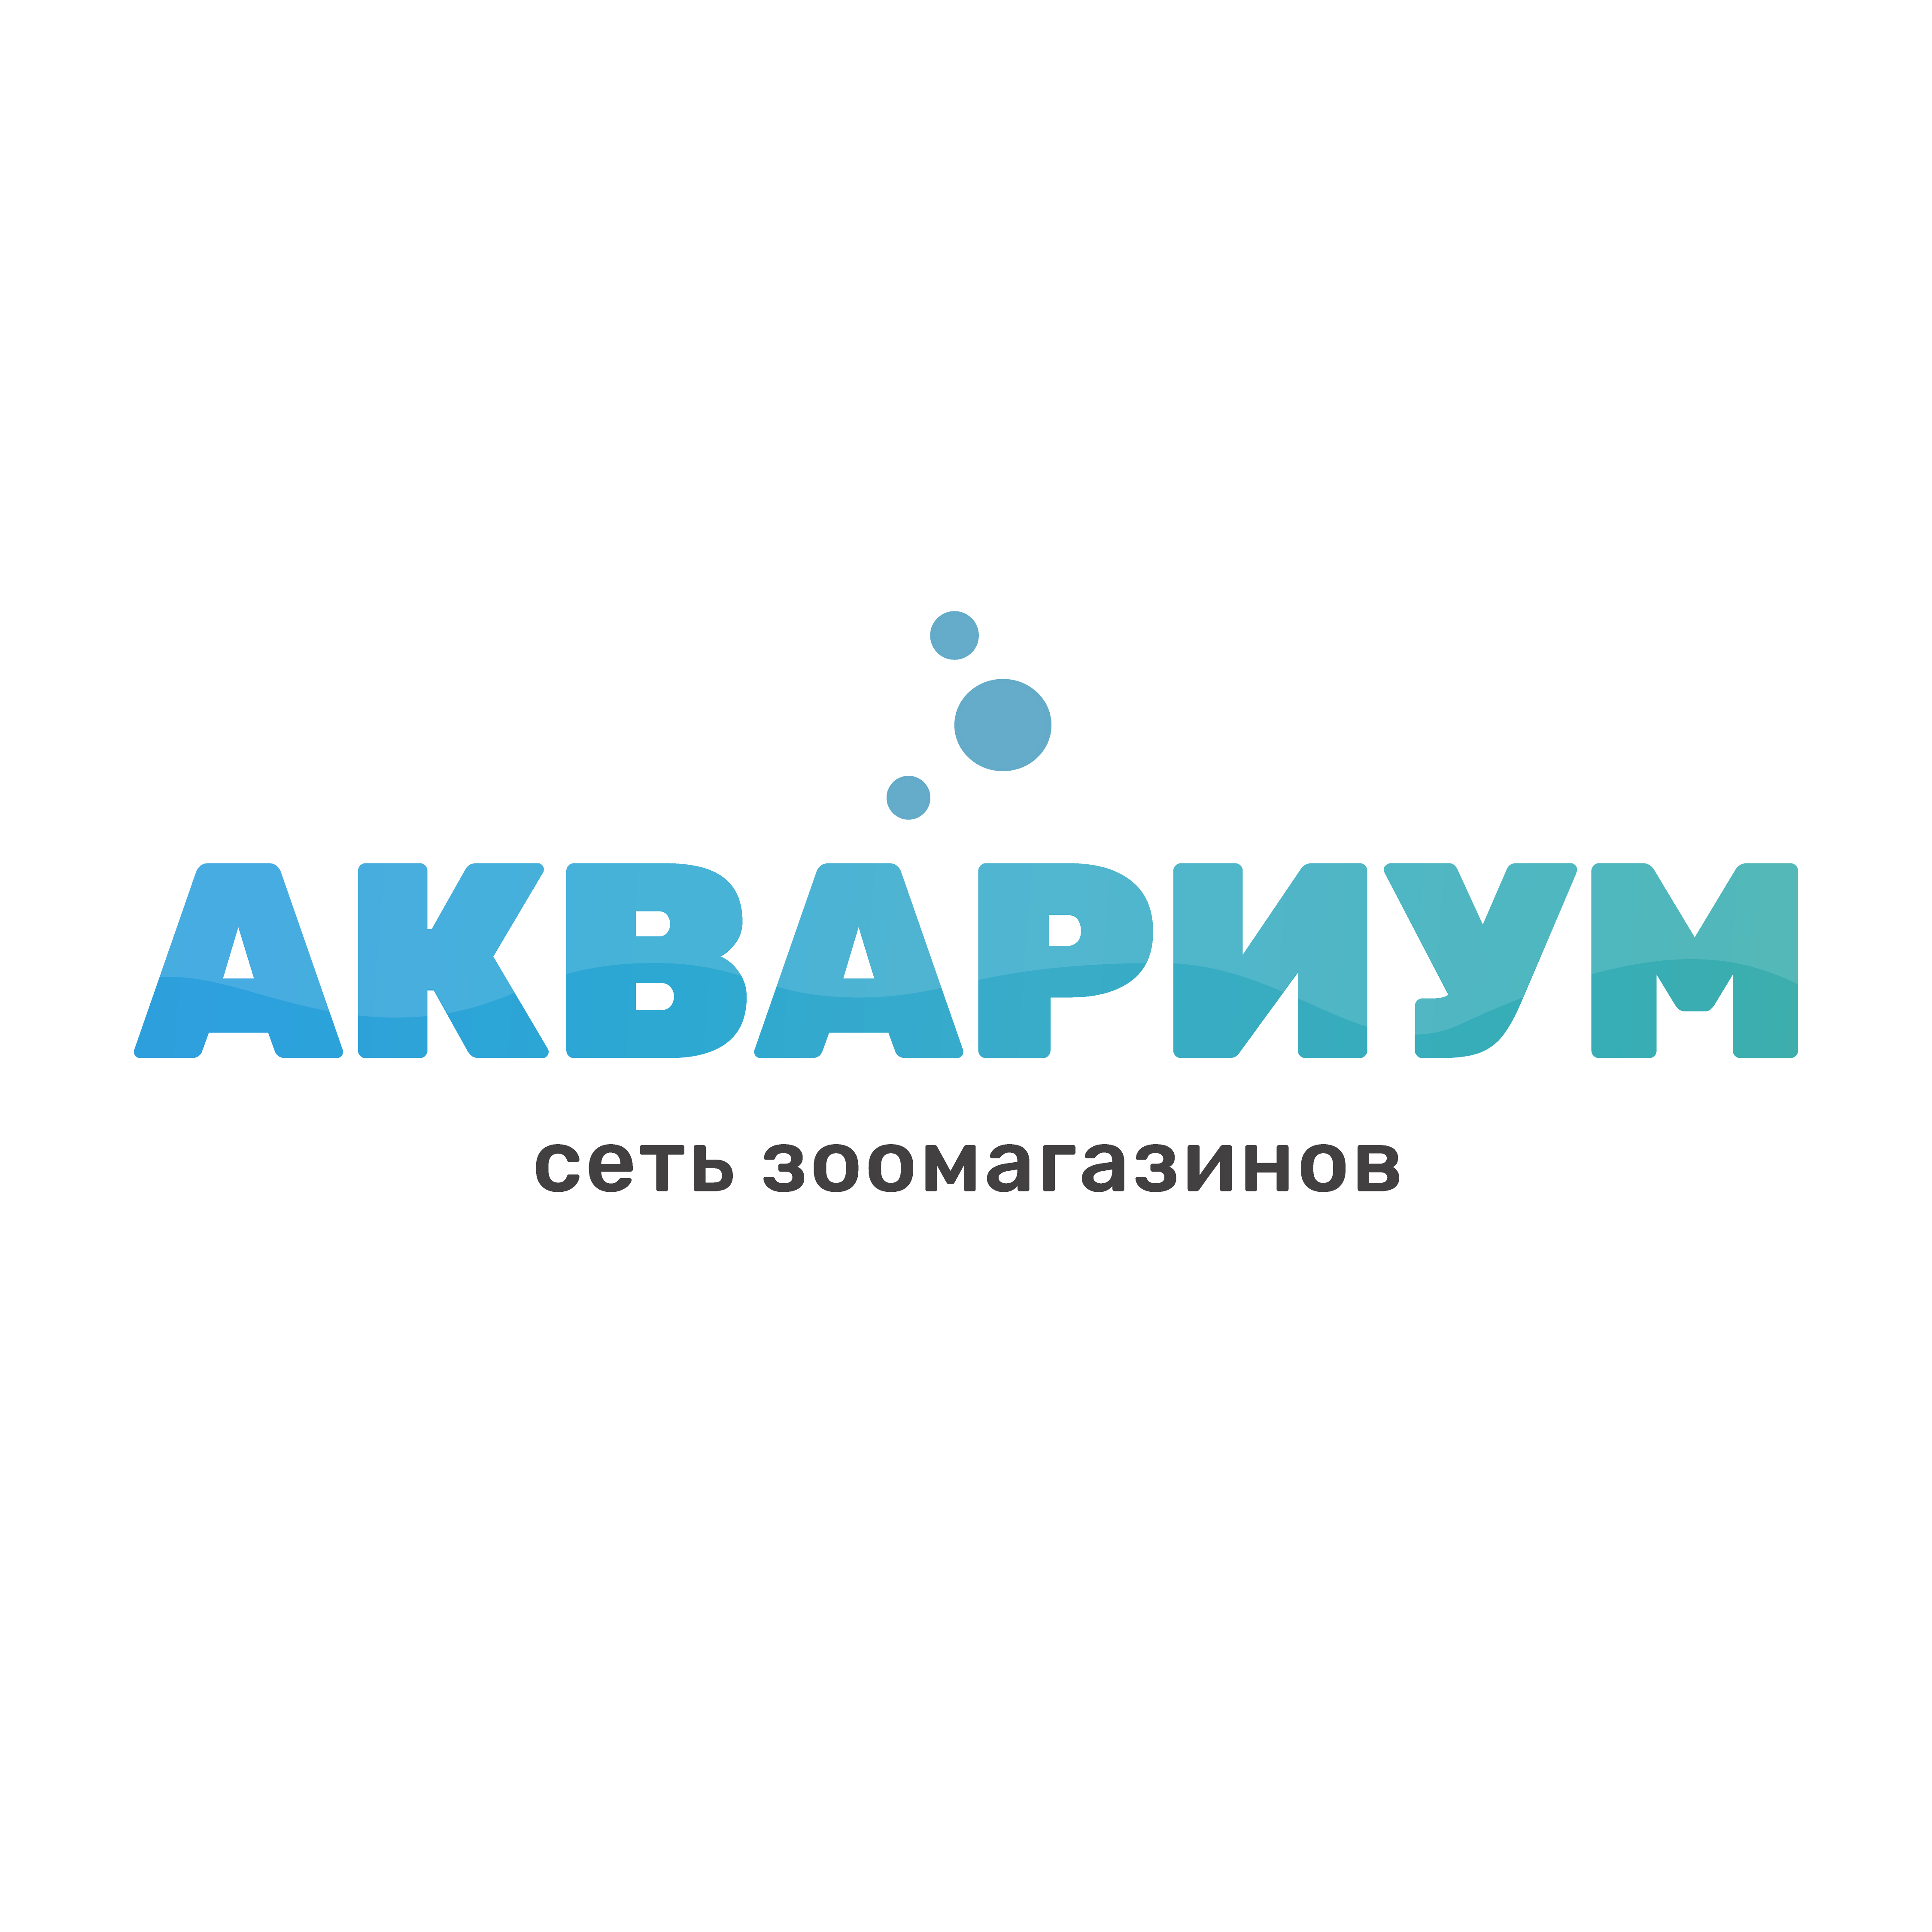 АКВАРИУМ, сеть зоомагазинов - Город Пенза